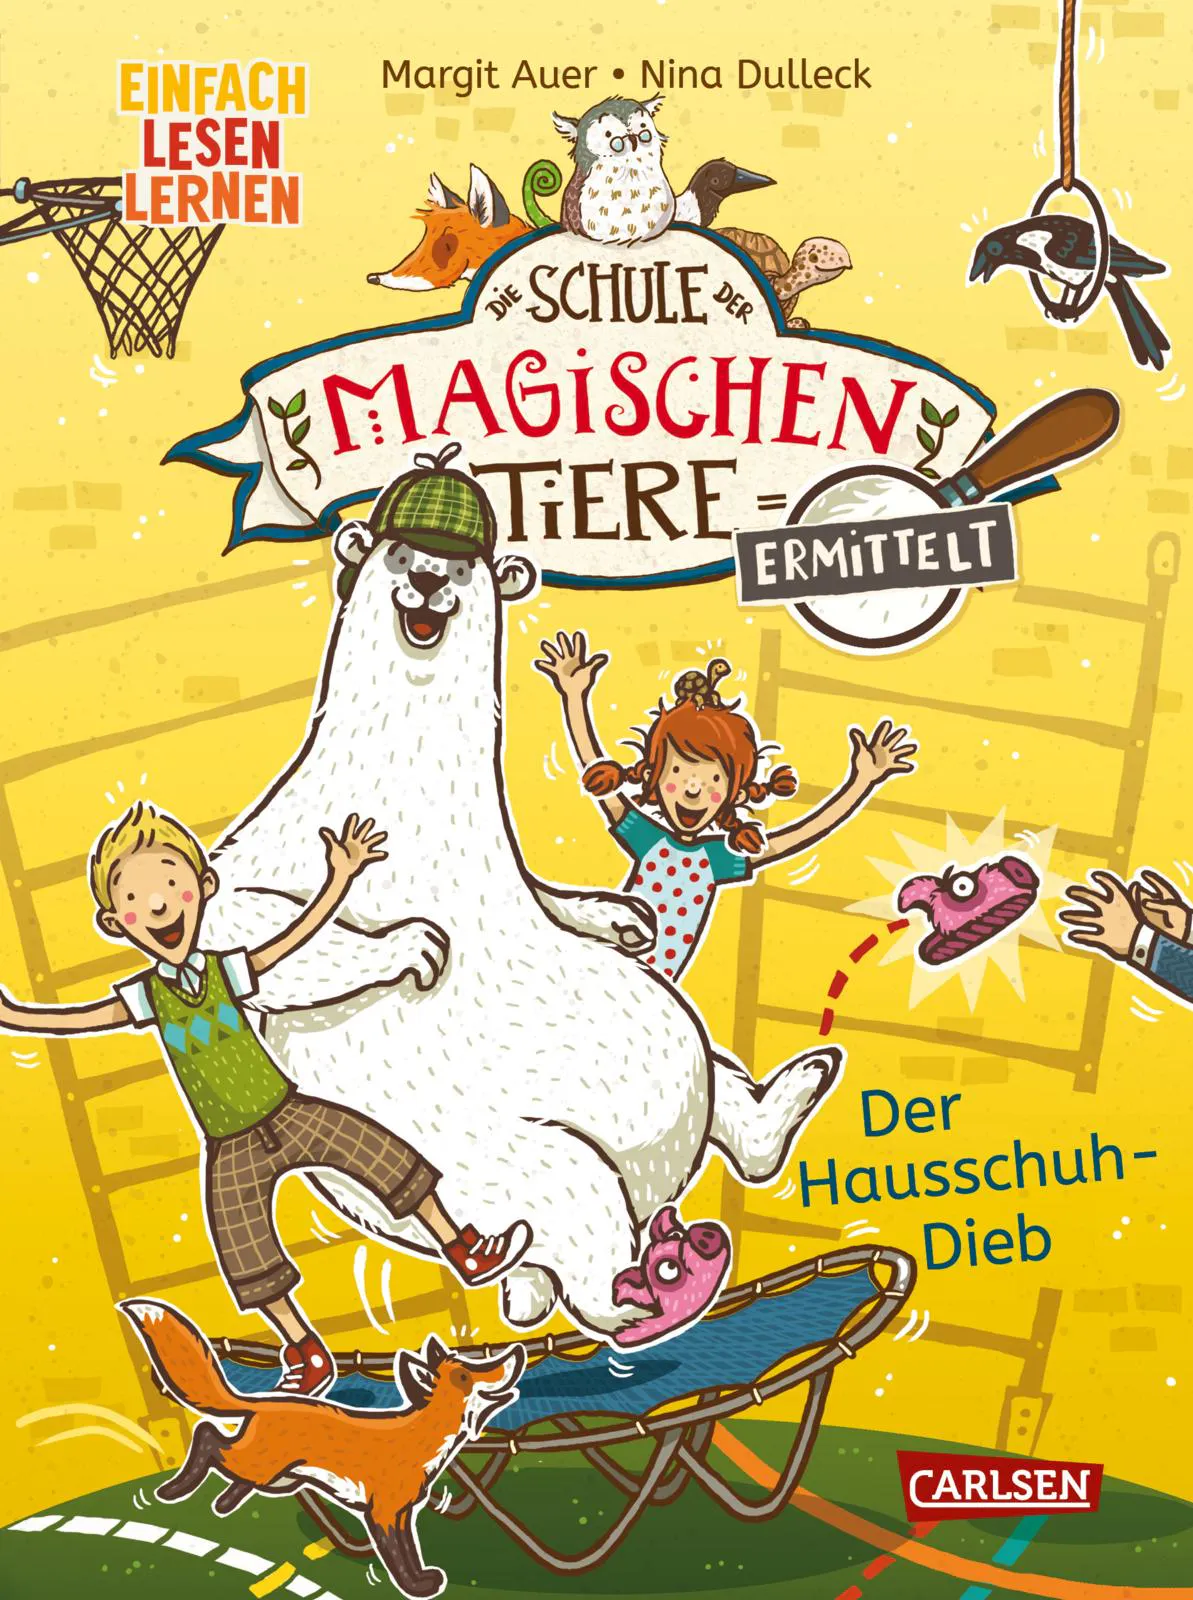 Cover von "Die Schule der magischen Tiere ermittelt - Der Hausschuh-Dieb" von Margit Auer und Nina Dulleck aus dem Carlsen Verlag.